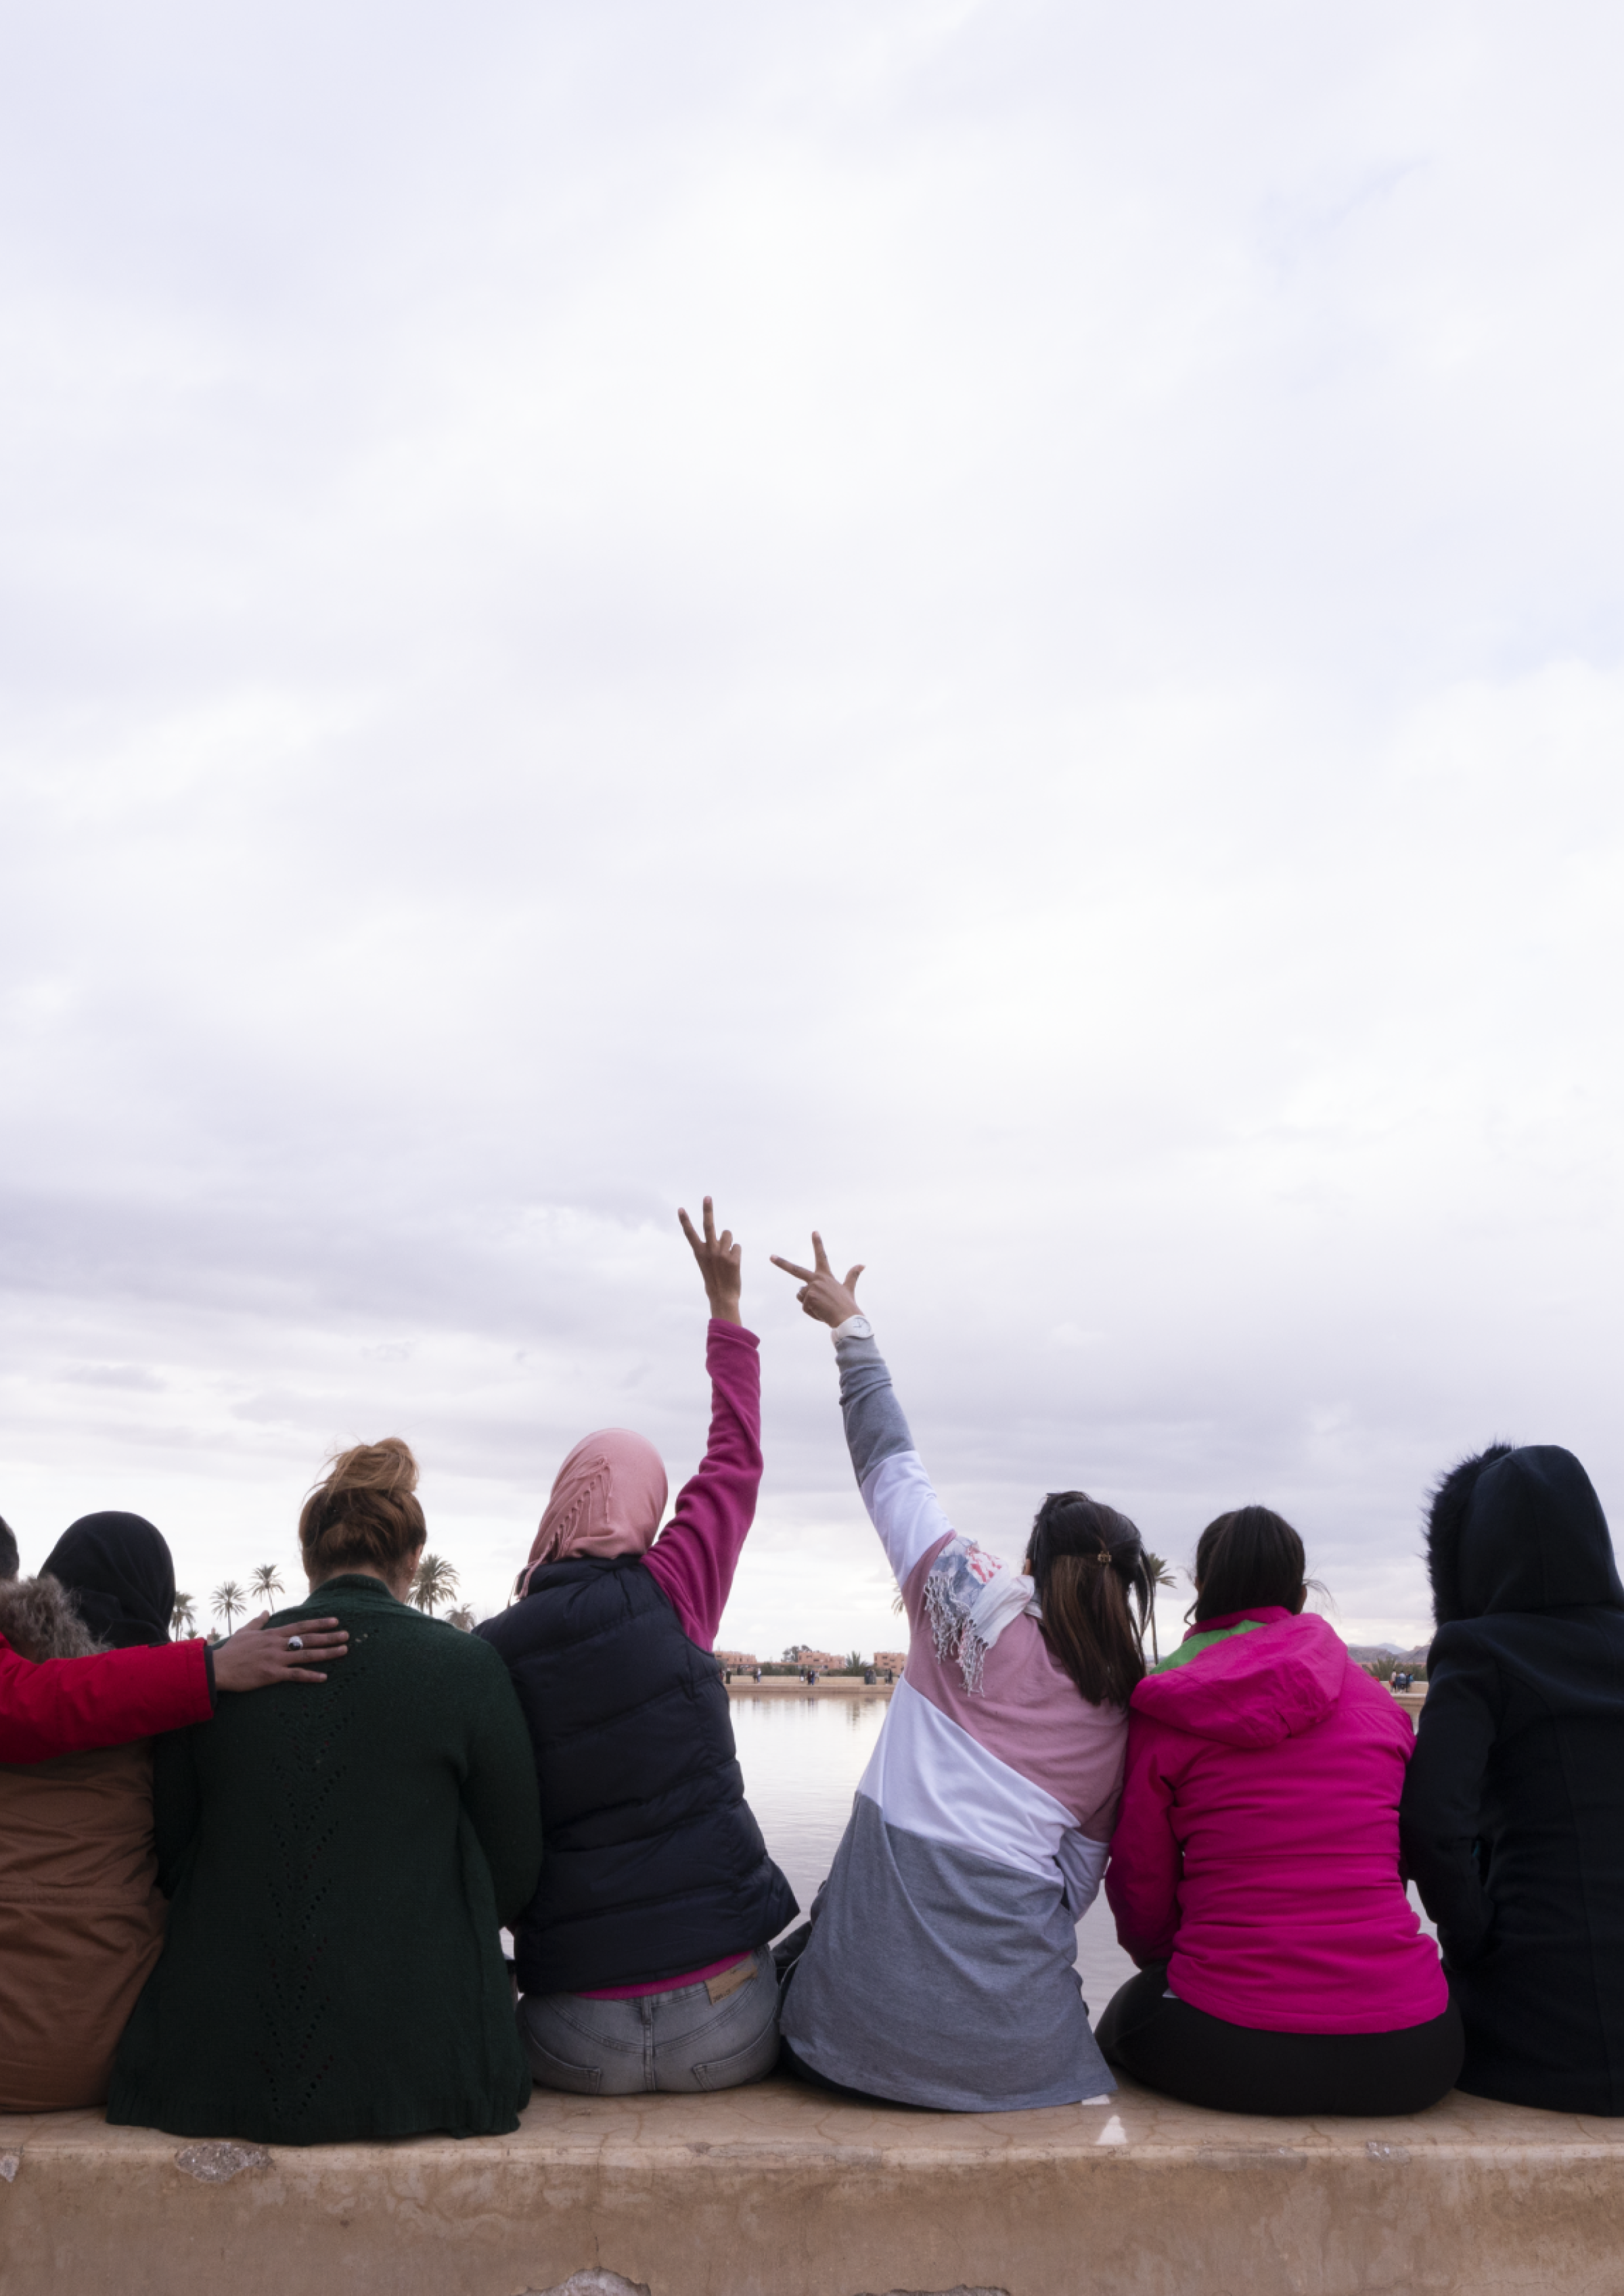 Frauen und Teilnehmerinnen des Projekts von Frieda sitzen vor einem Gewässer und schauen in die Ferne.